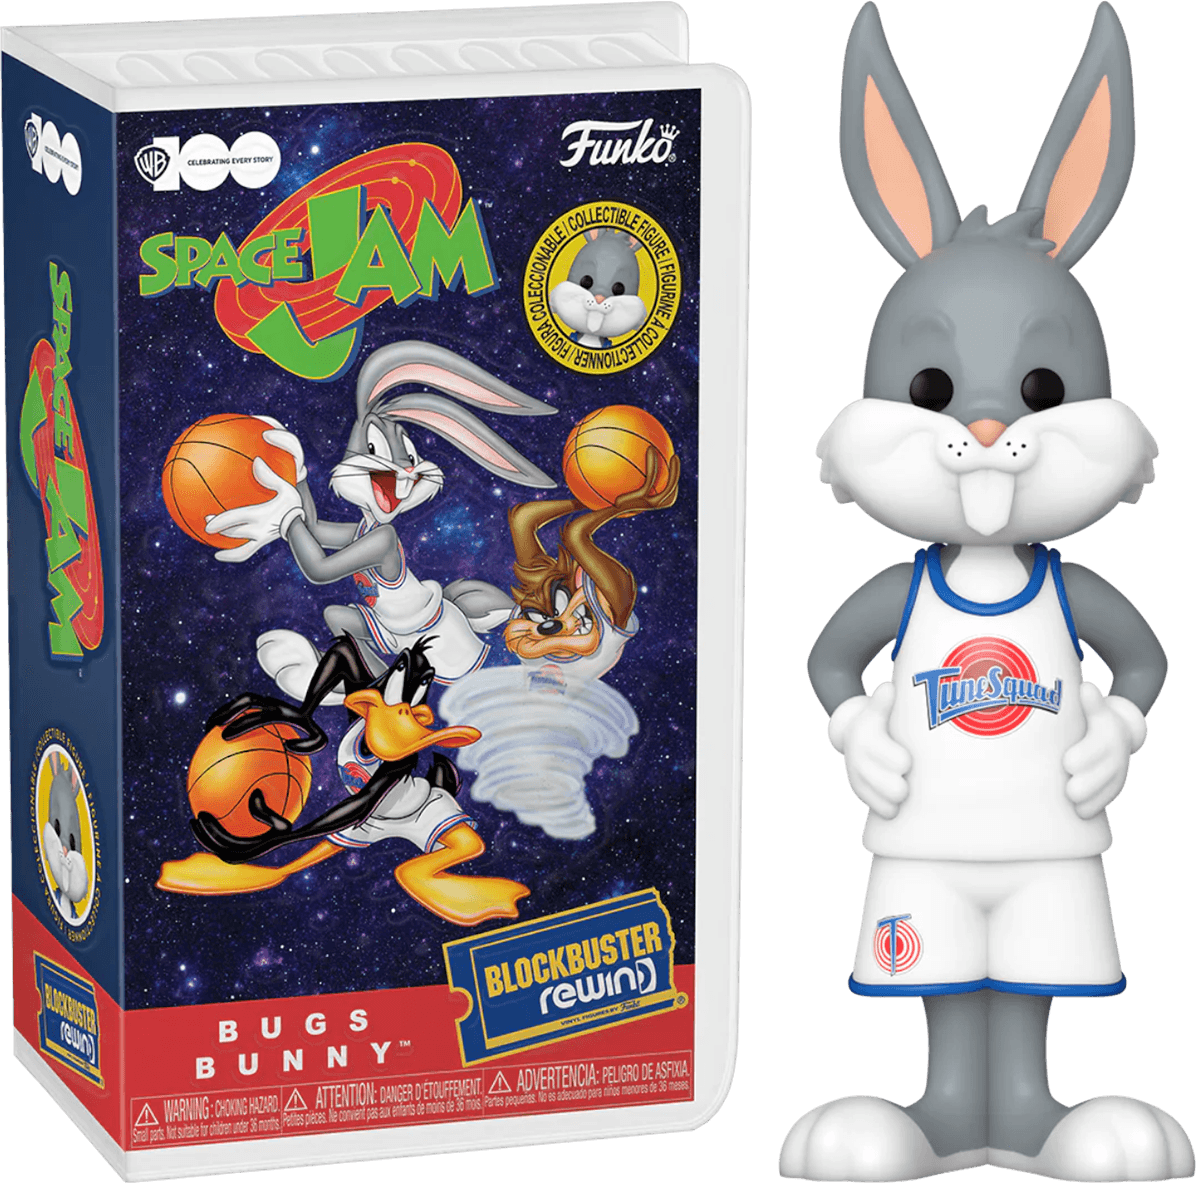 FUN76161 Space Jam - Bugs Bunny Blockbuster Rewind Vinyl Figure - Funko - Titan Pop Culture